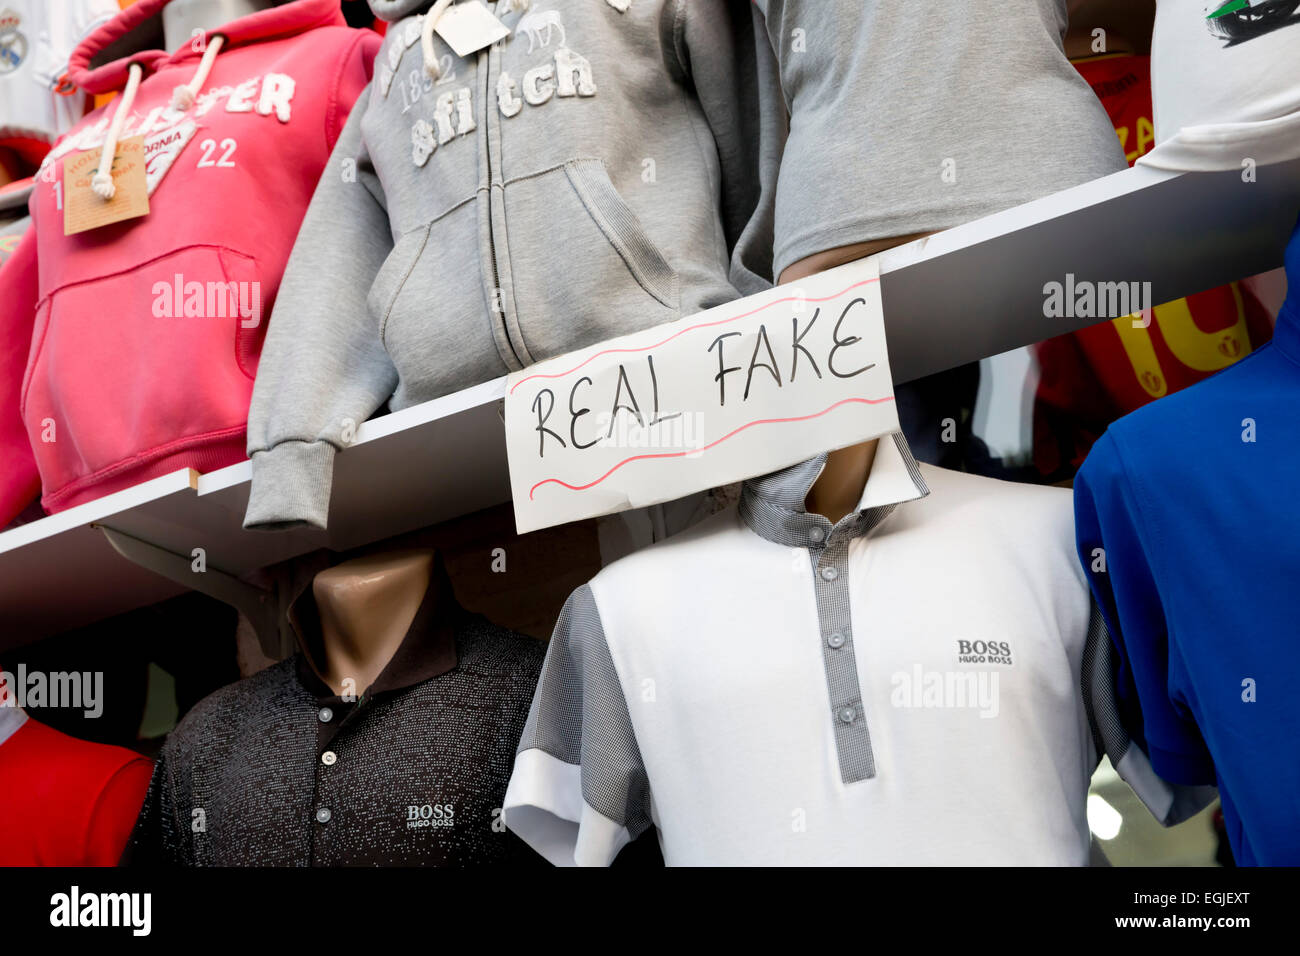 Fake designer clothing Stock Photo